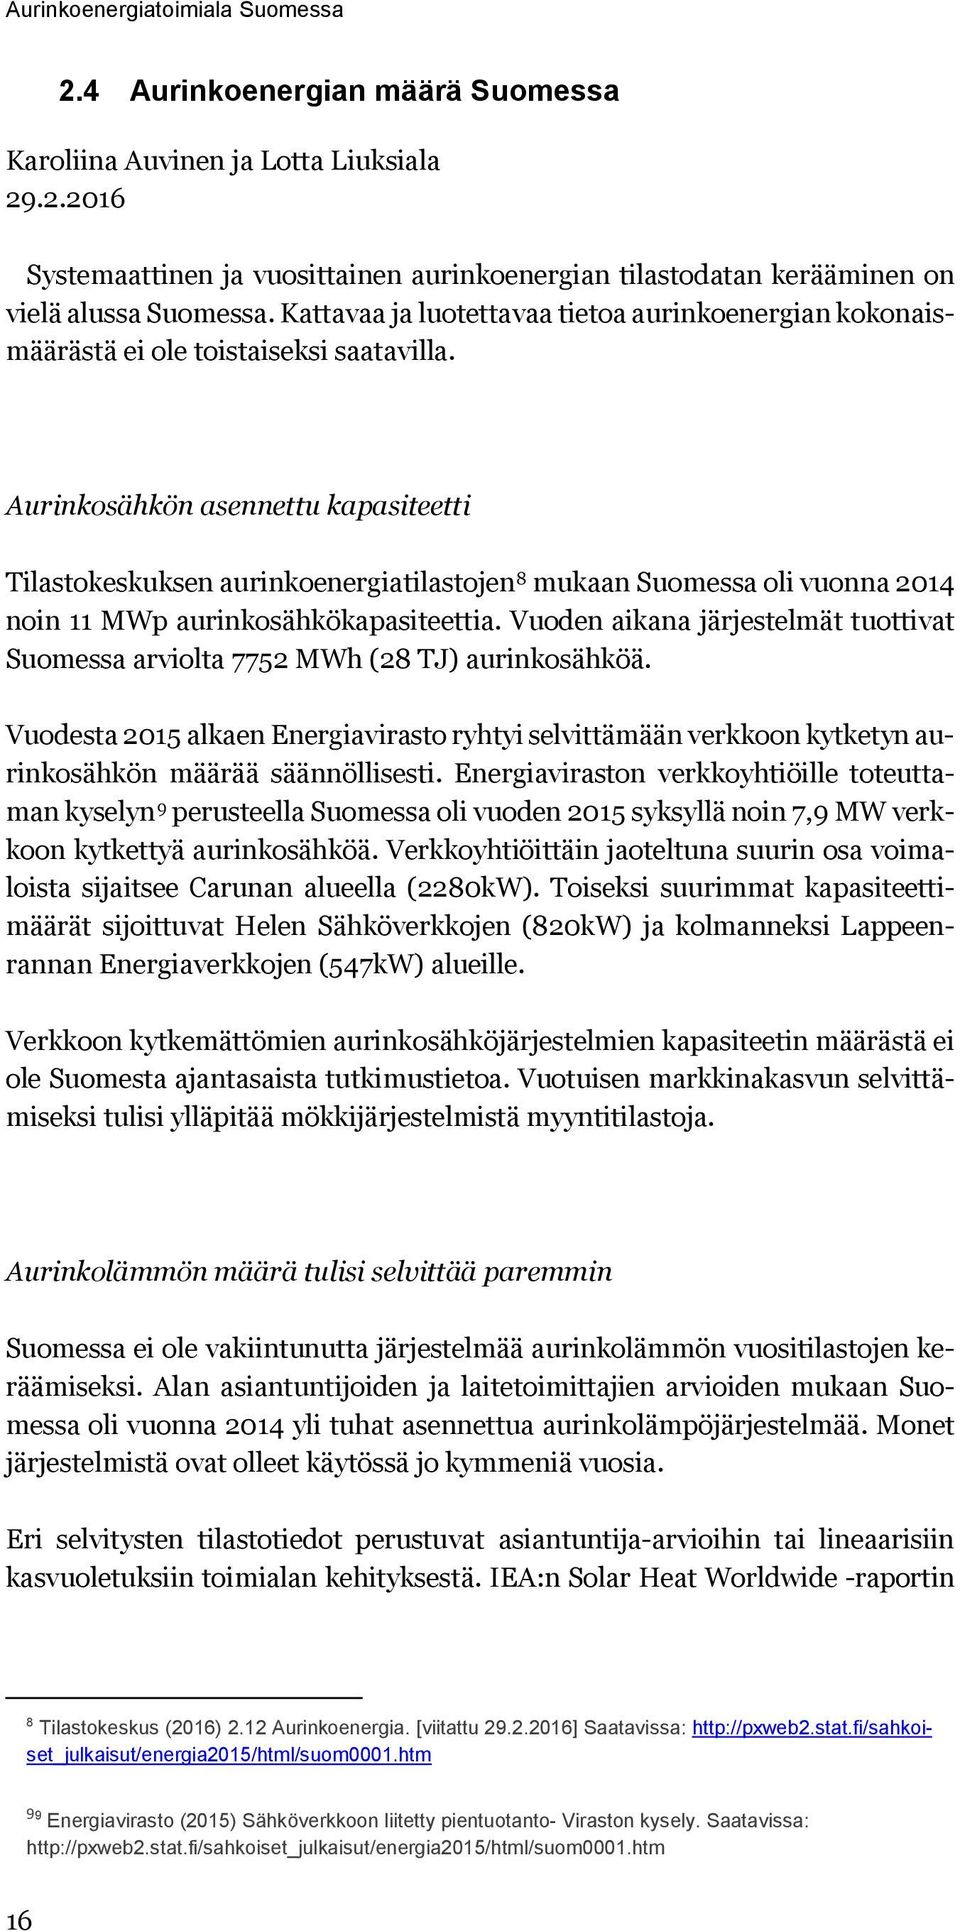 Aurinkosähkön asennettu kapasiteetti Tilastokeskuksen aurinkoenergiatilastojen 8 mukaan Suomessa oli vuonna 2014 noin 11 MWp aurinkosähkökapasiteettia.